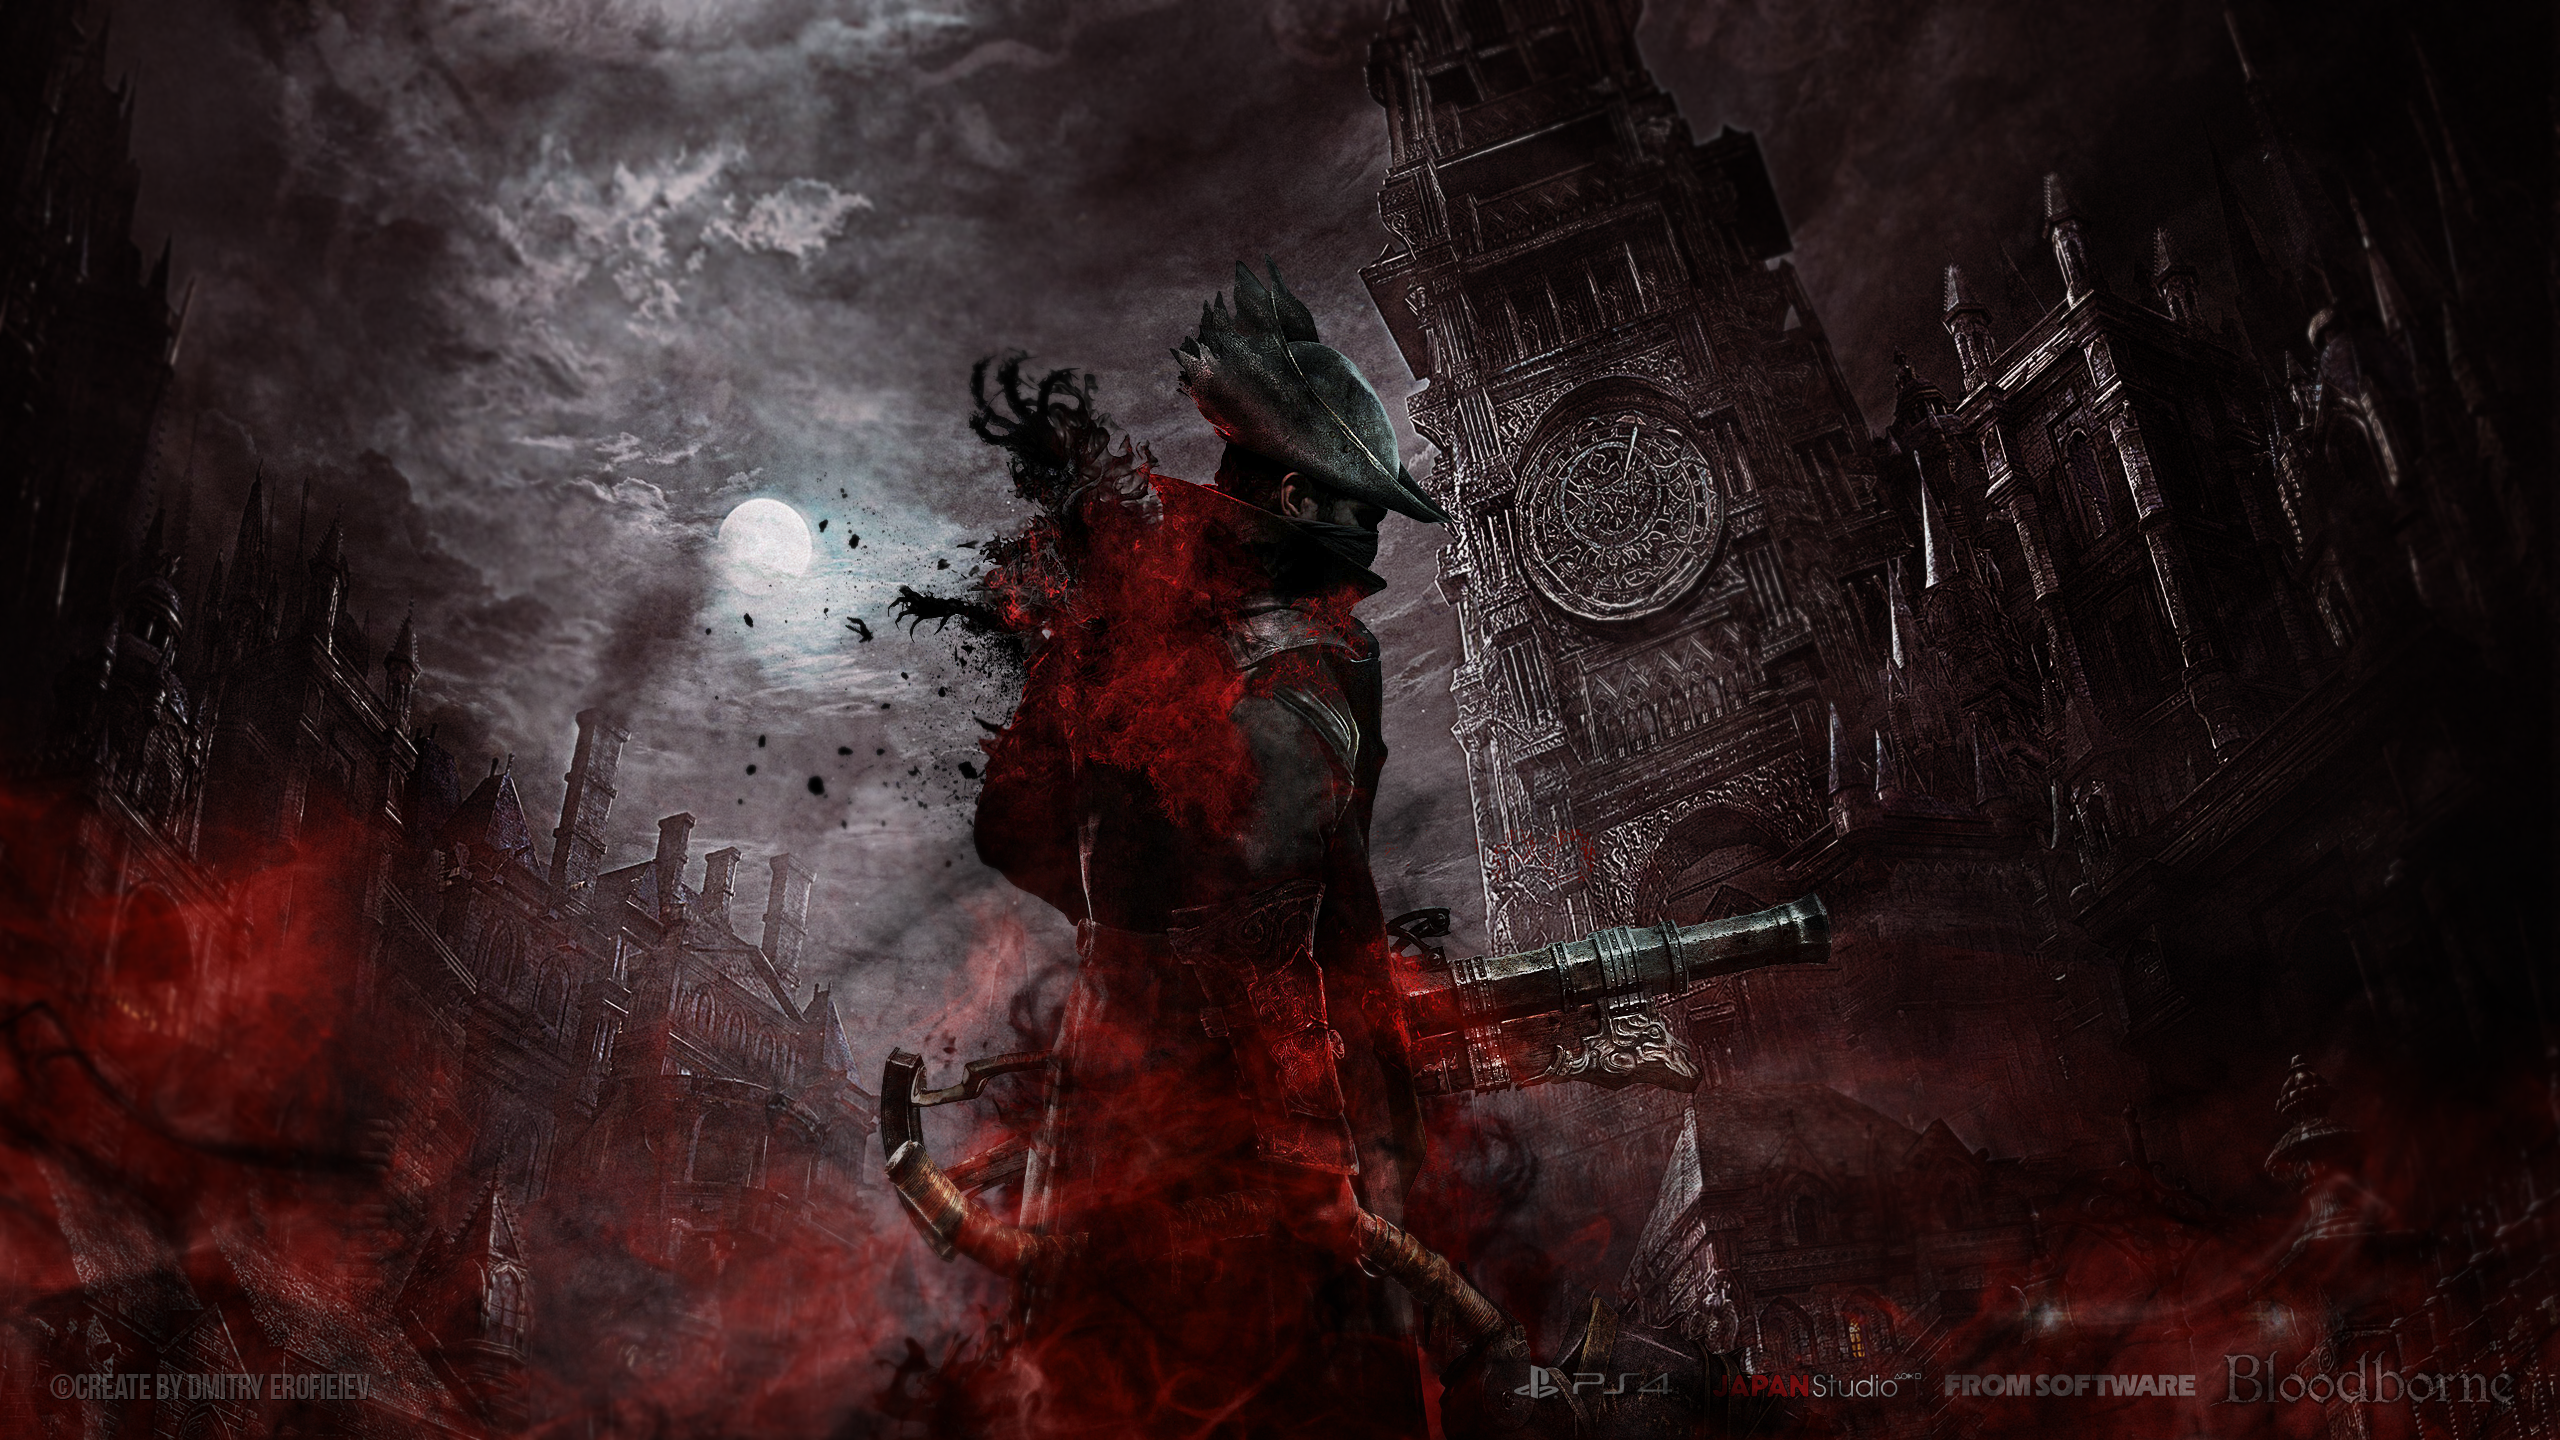 bloodborne wallpaper,action adventure game,darkness,cg artwork,demon,pc game